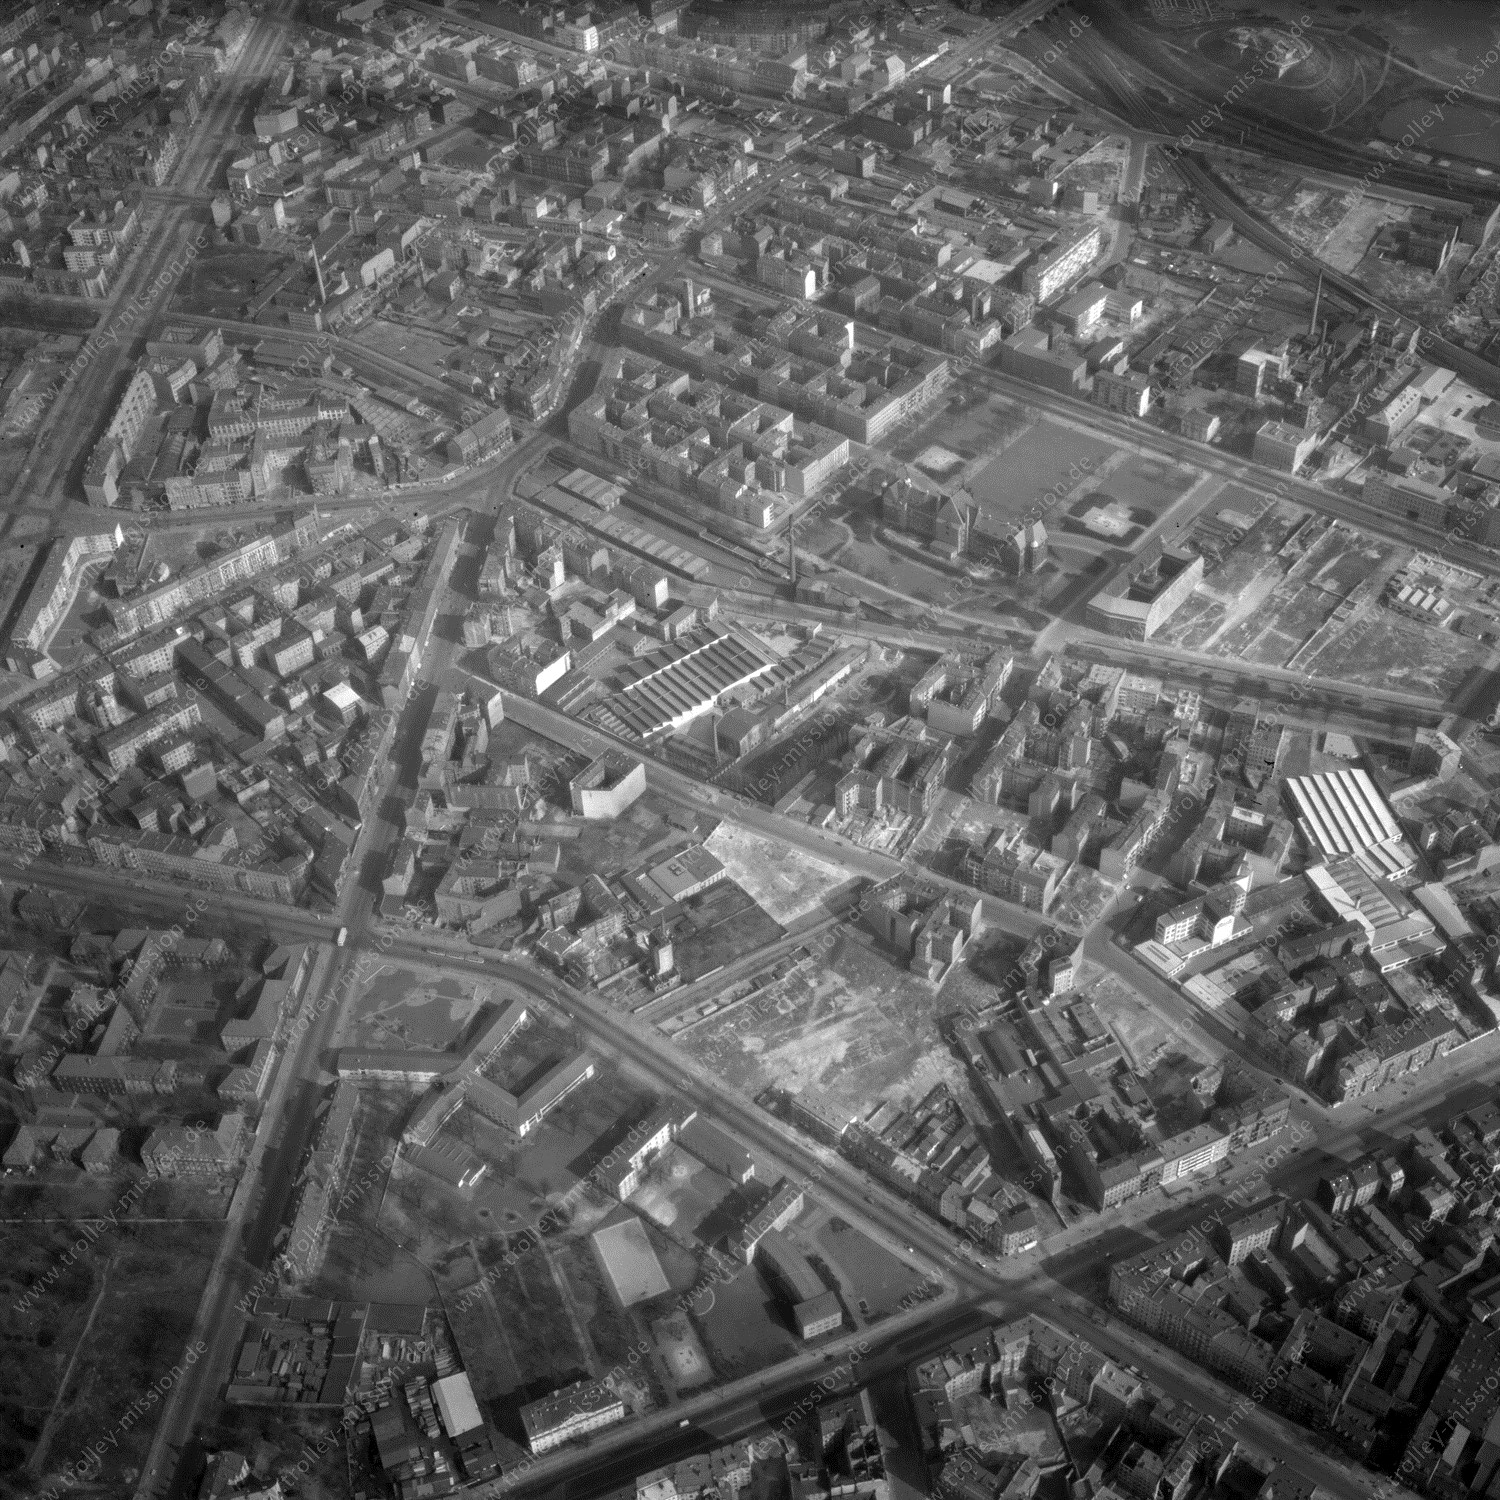 Alte Fotos und Luftbilder von Berlin - Luftbildaufnahme Nr. 10 - Historische Luftaufnahmen von West-Berlin aus dem Jahr 1954 - Flugstrecke Quebec